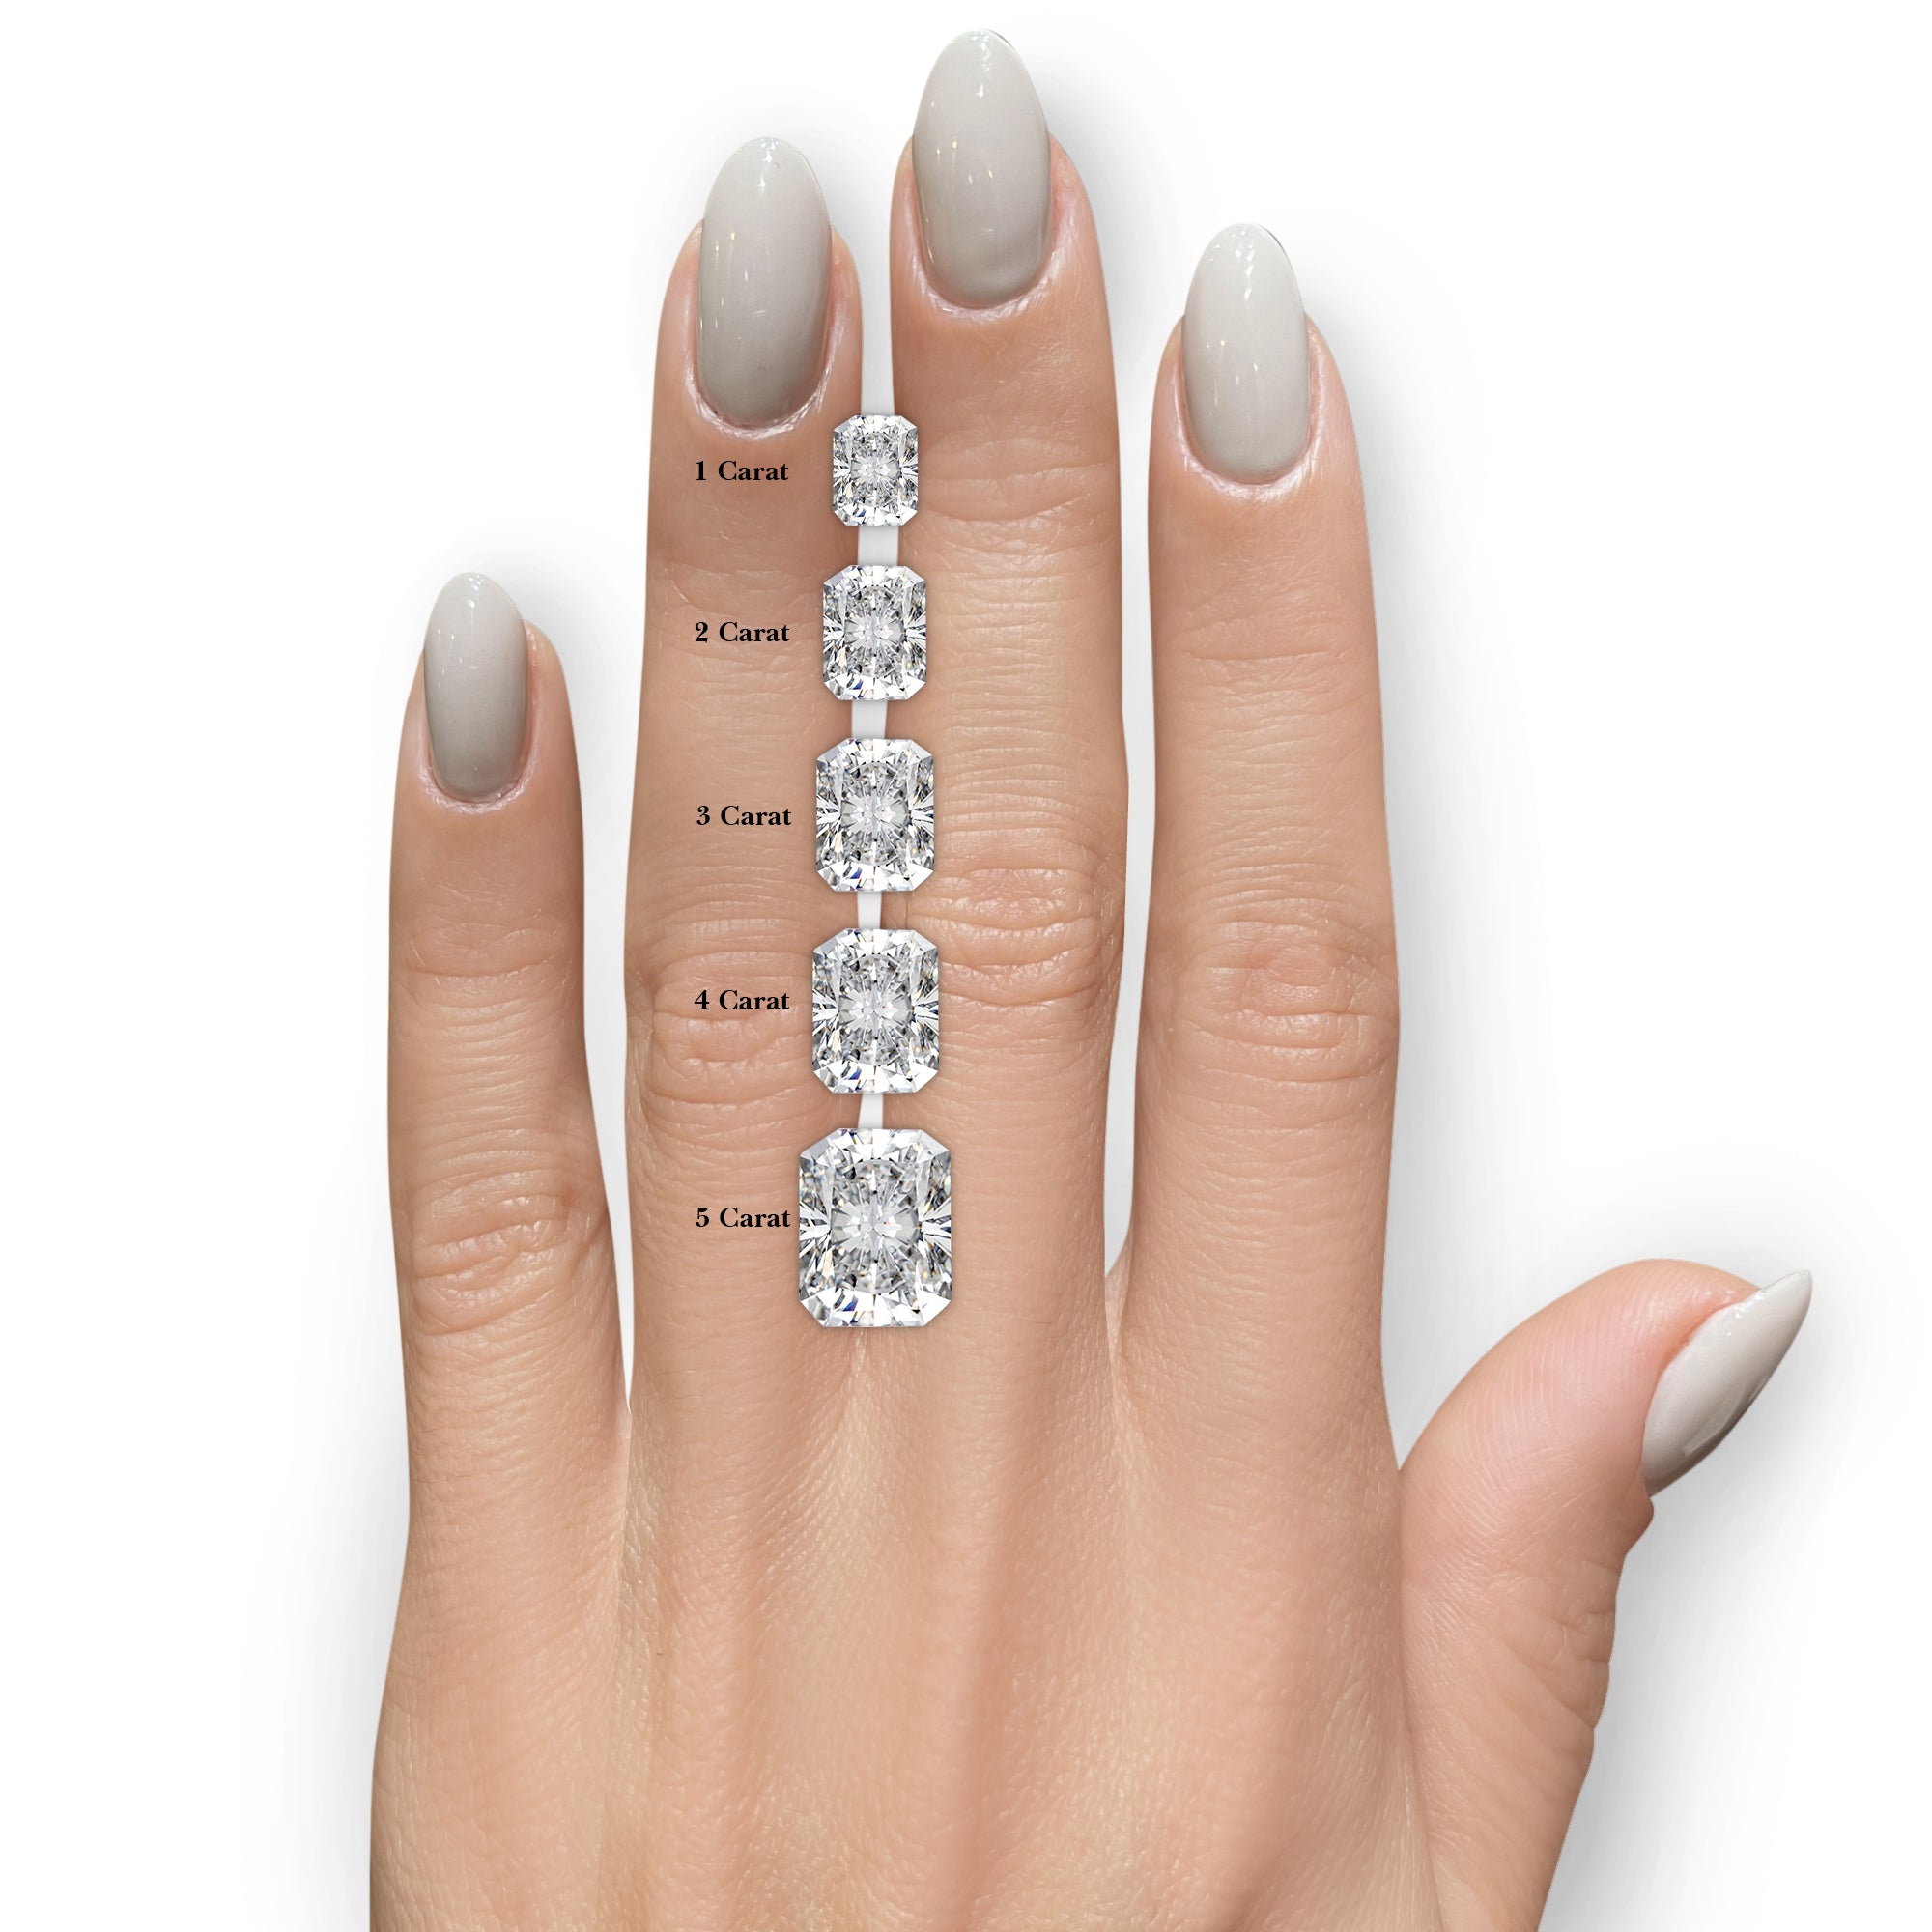 Cora Lab Grown Diamond Bridal Set -14K White Gold